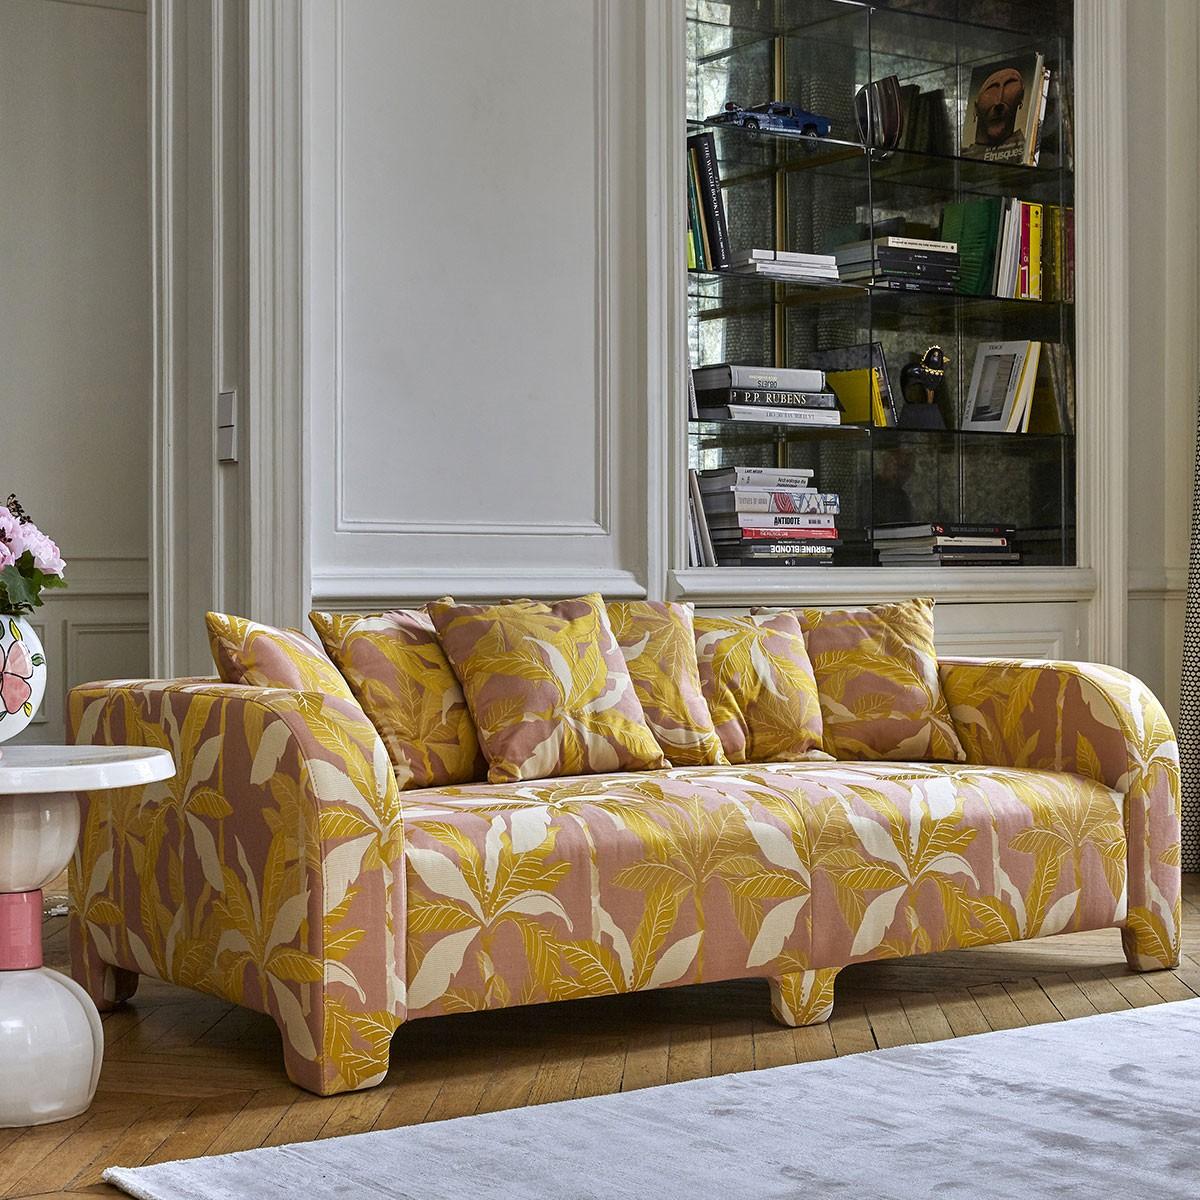 Popus Editions Graziella 2 Seater Sofa aus anthrazitfarbenem Marrakesch-Jacquard-Stoff

Ein Fuß, der einen anderen verbirgt. Ein Kissen, das ein anderes verdeckt. Eine Kurve, die eine andere verbirgt, mit zeitgenössischen Linien und einem Sockel,